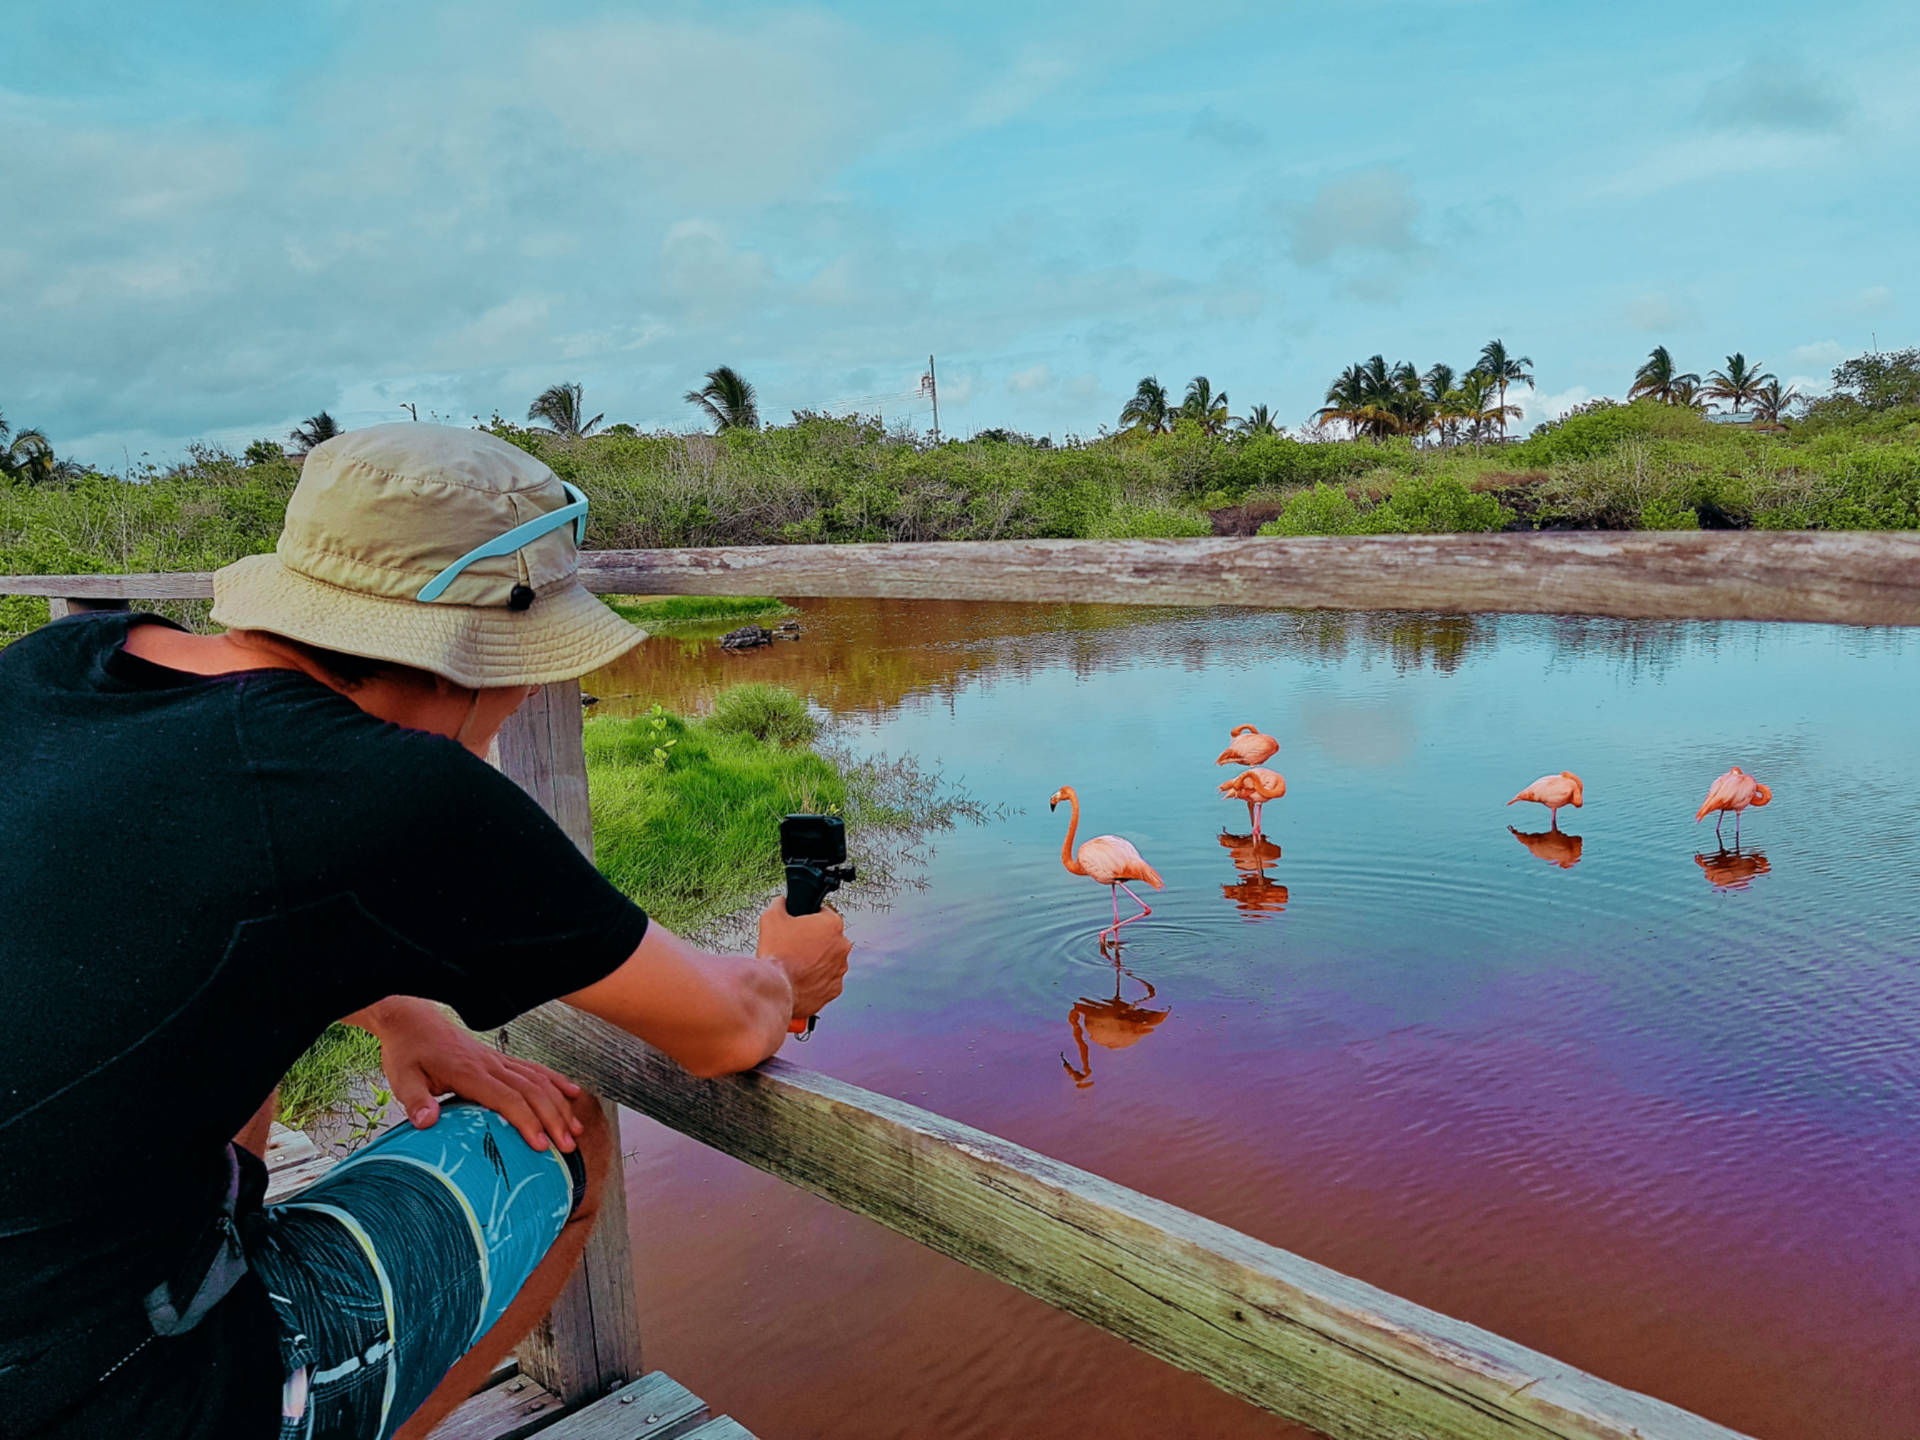 Jak tanio zwiedzić Wyspy Galapagos Darmowe atrakcje na wyspach (20)